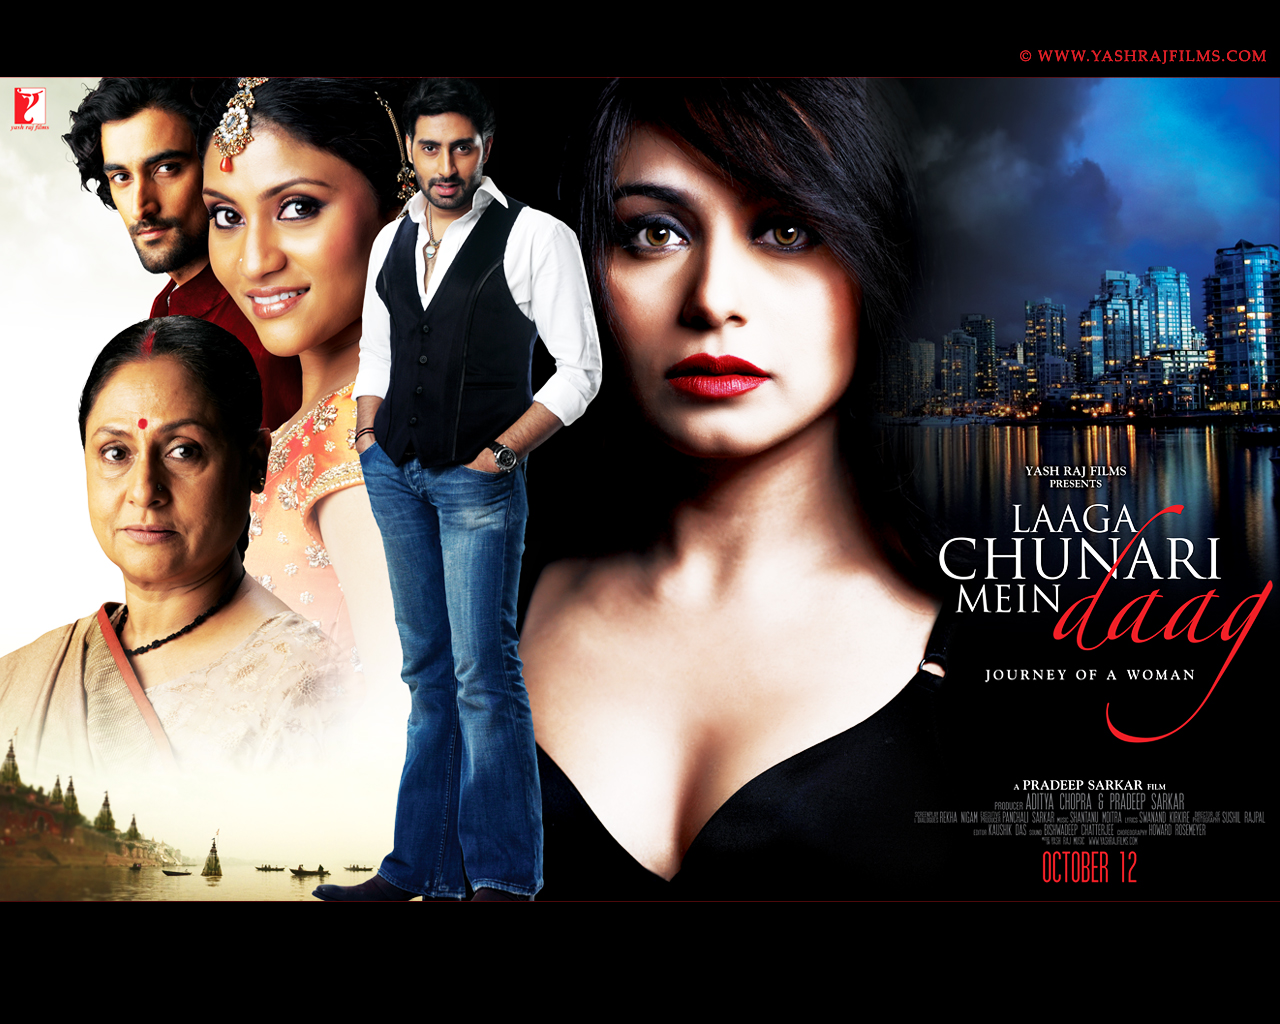 Laaga Chunari Mein Daag Bollywood Movies Full Movies Hd Movies